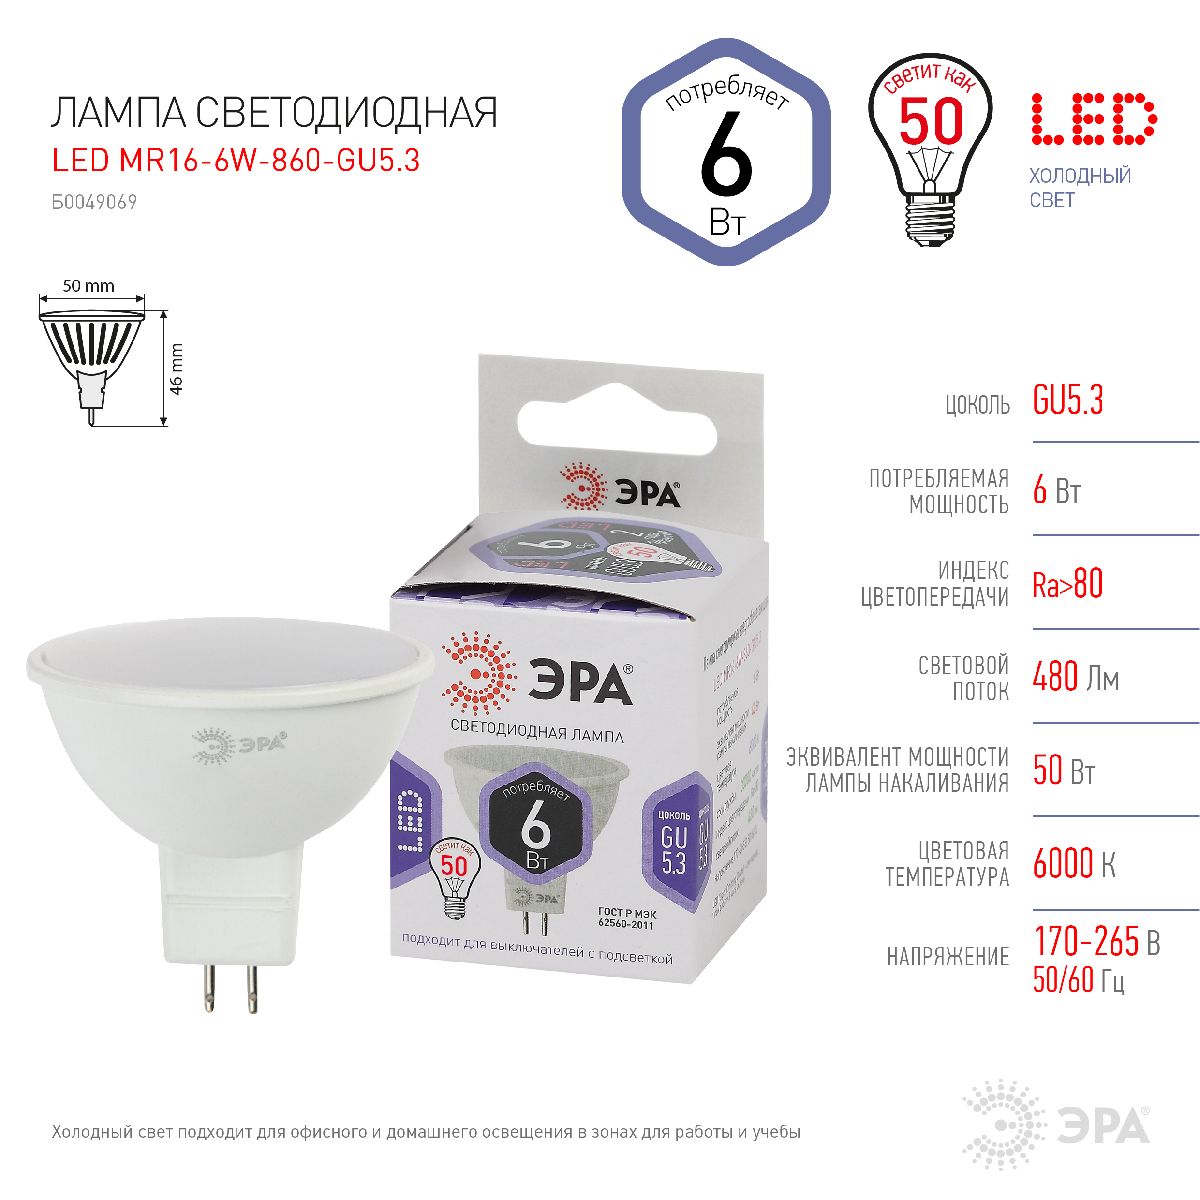 Лампа светодиодная Эра GU5.3 6W 6000K LED MR16-6W-860-GU5.3 Б0049069